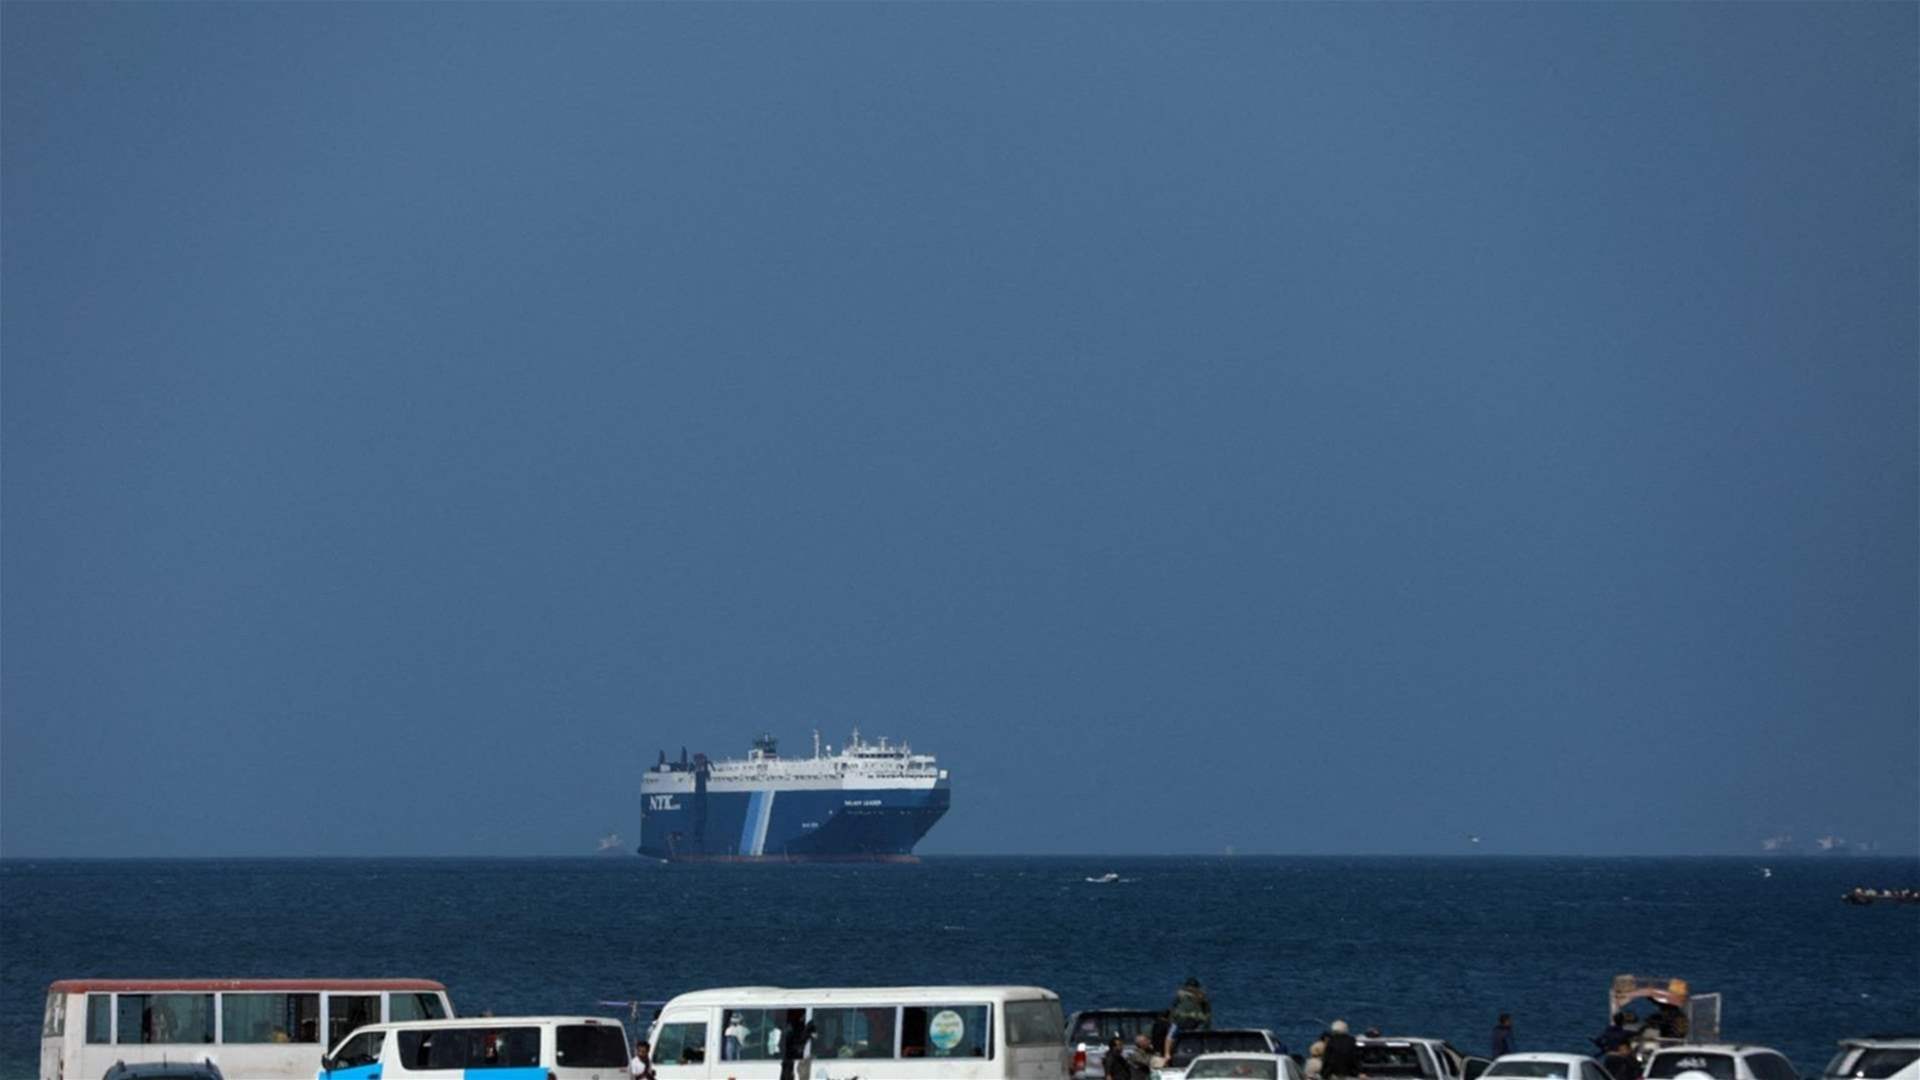 هيئة عمليات التجارة البحرية البريطانية تتلقى تقريرا عن حادث جنوبي المخا في اليمن